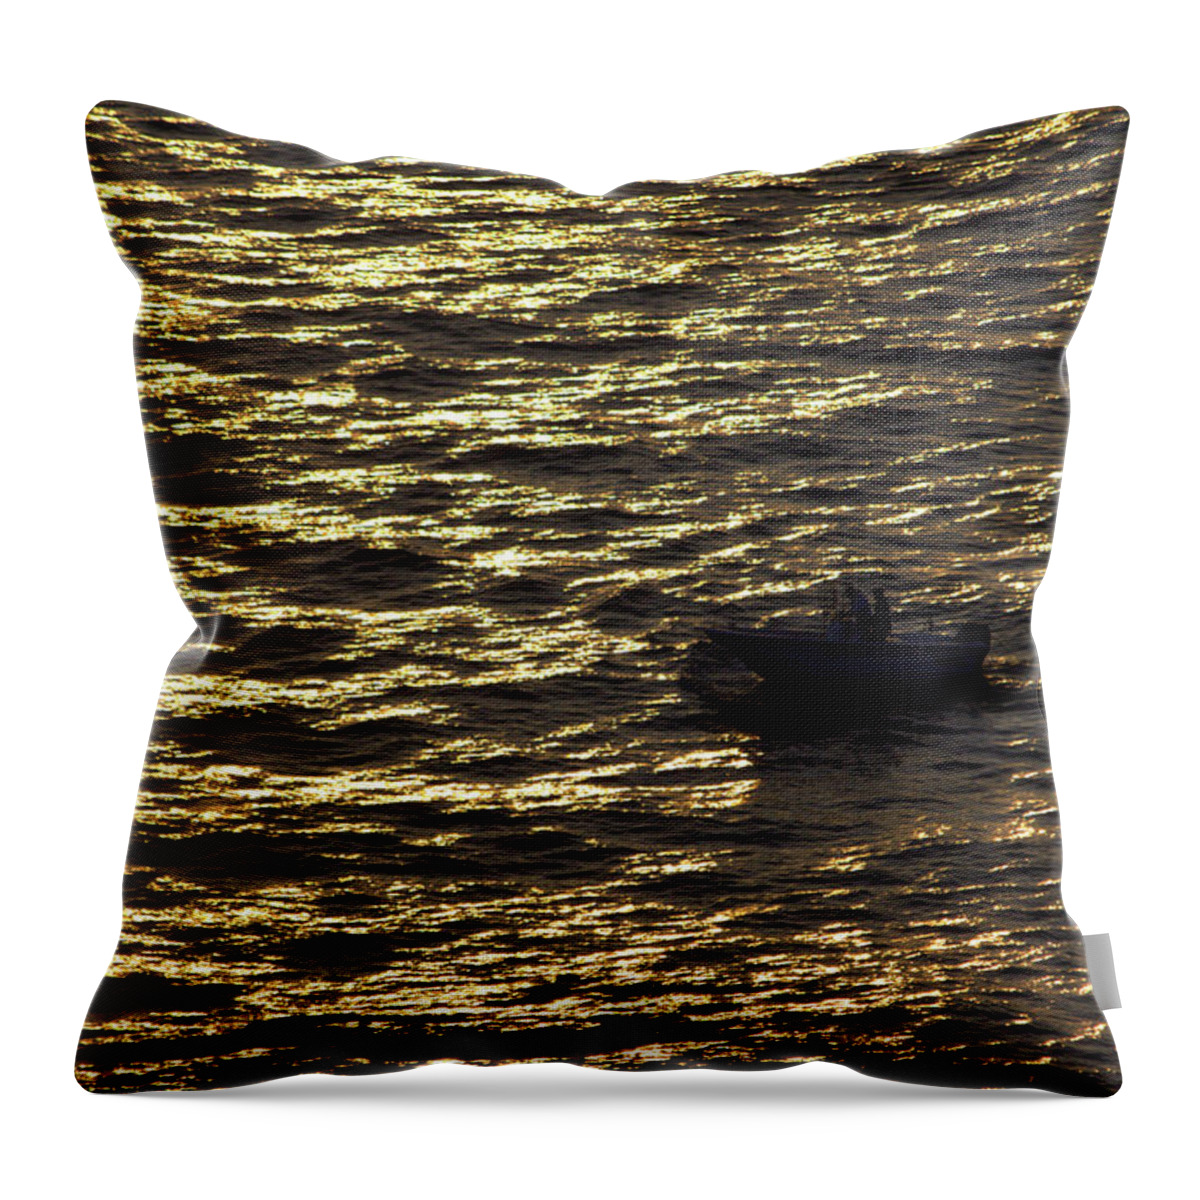 Ocean Throw Pillow featuring the photograph Golden ocean by Miroslava Jurcik